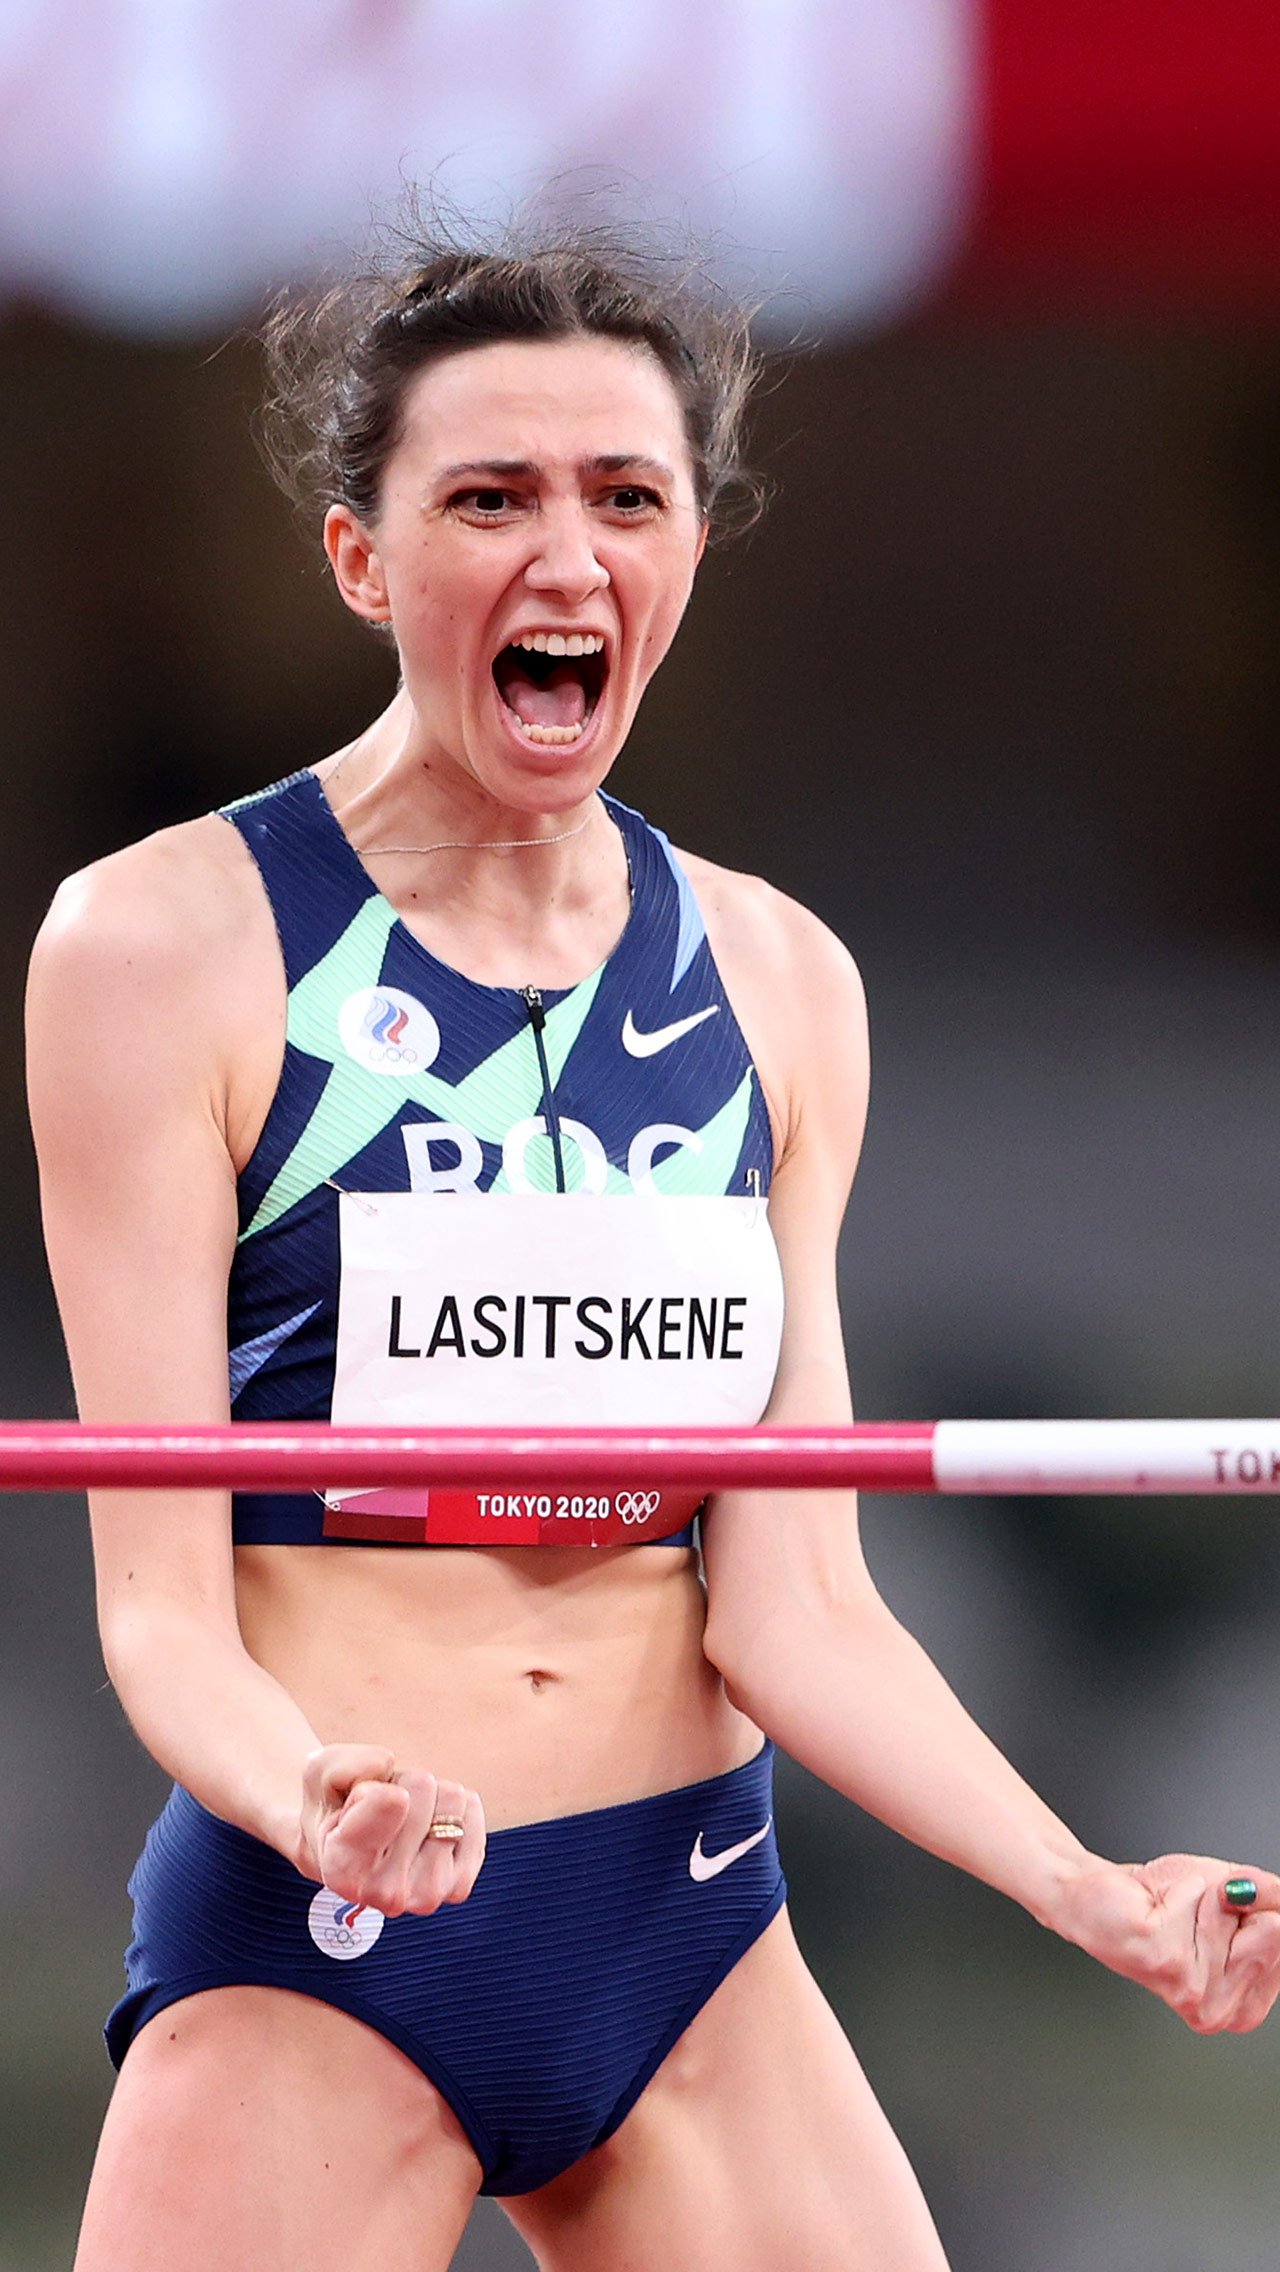 Первая в истории трёхкратная чемпионка мира в прыжках в высоту Мария Ласицкене наконец-то выиграла золото Олимпиады! И это несмотря на травму и трудности с нейтральным статусом!